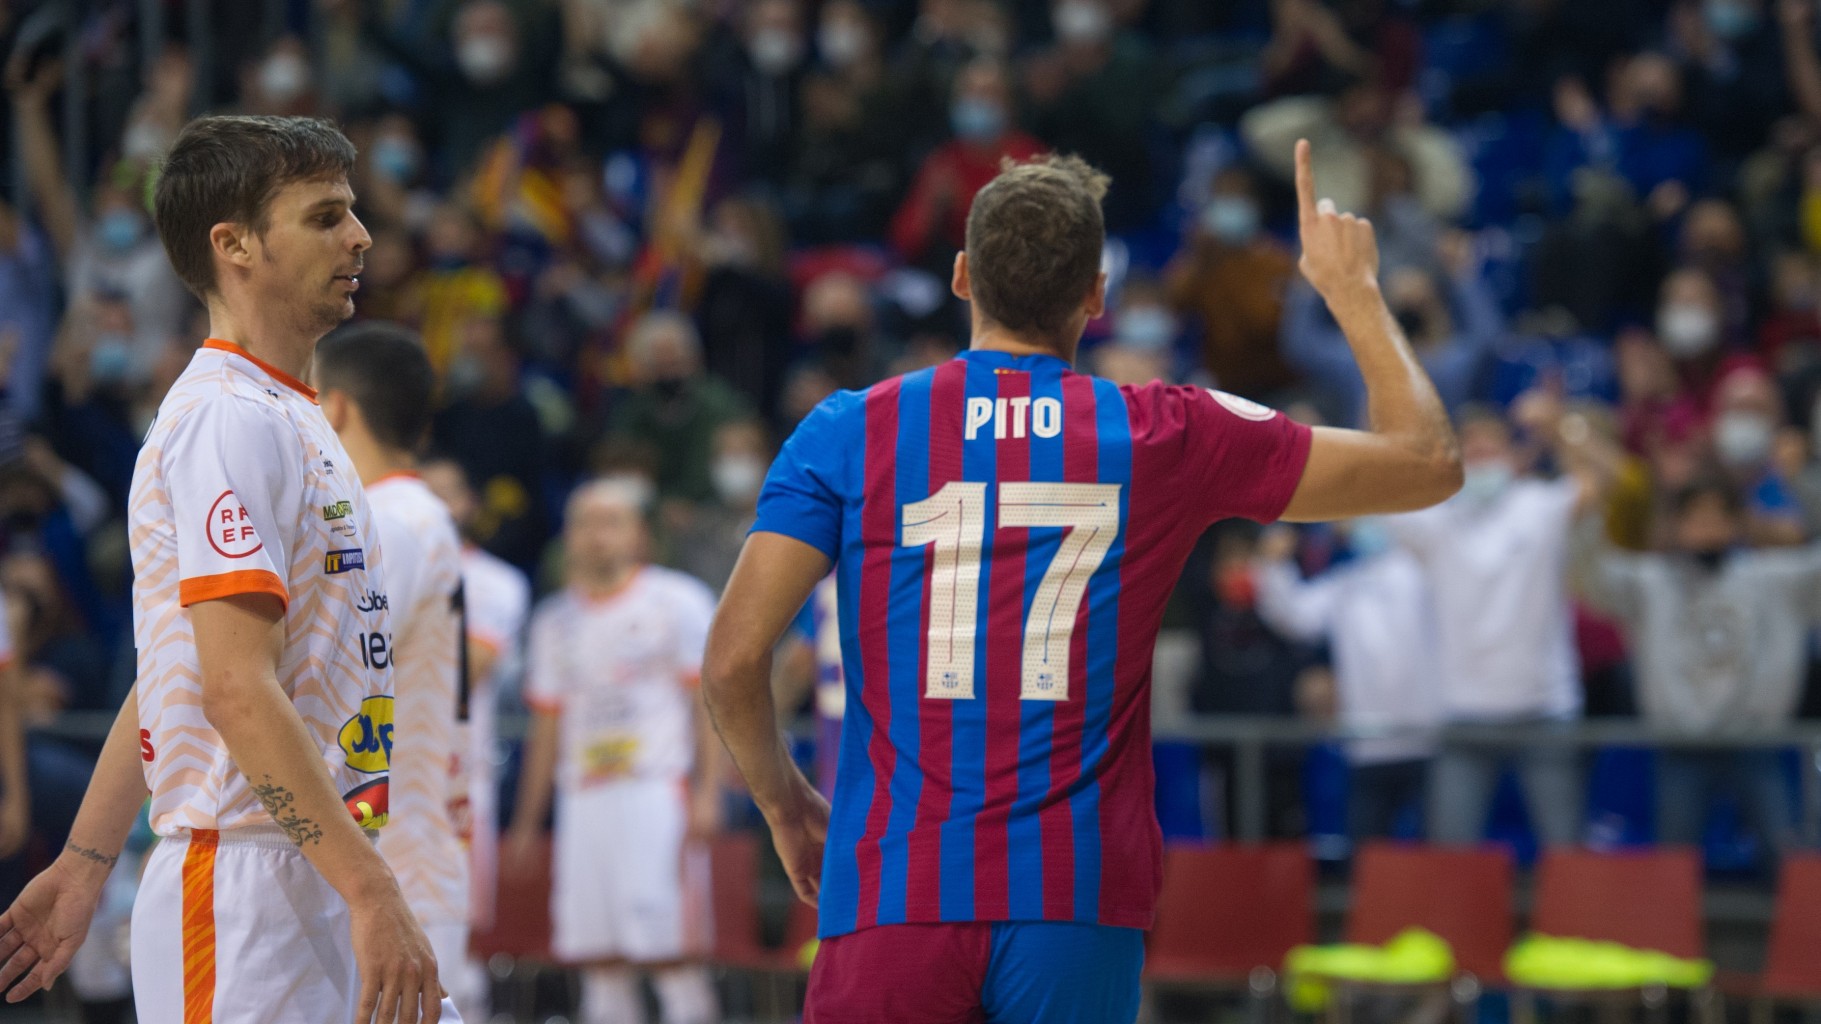 Pito, del Barça, celebra un gol ante el Ribera Navarra FS